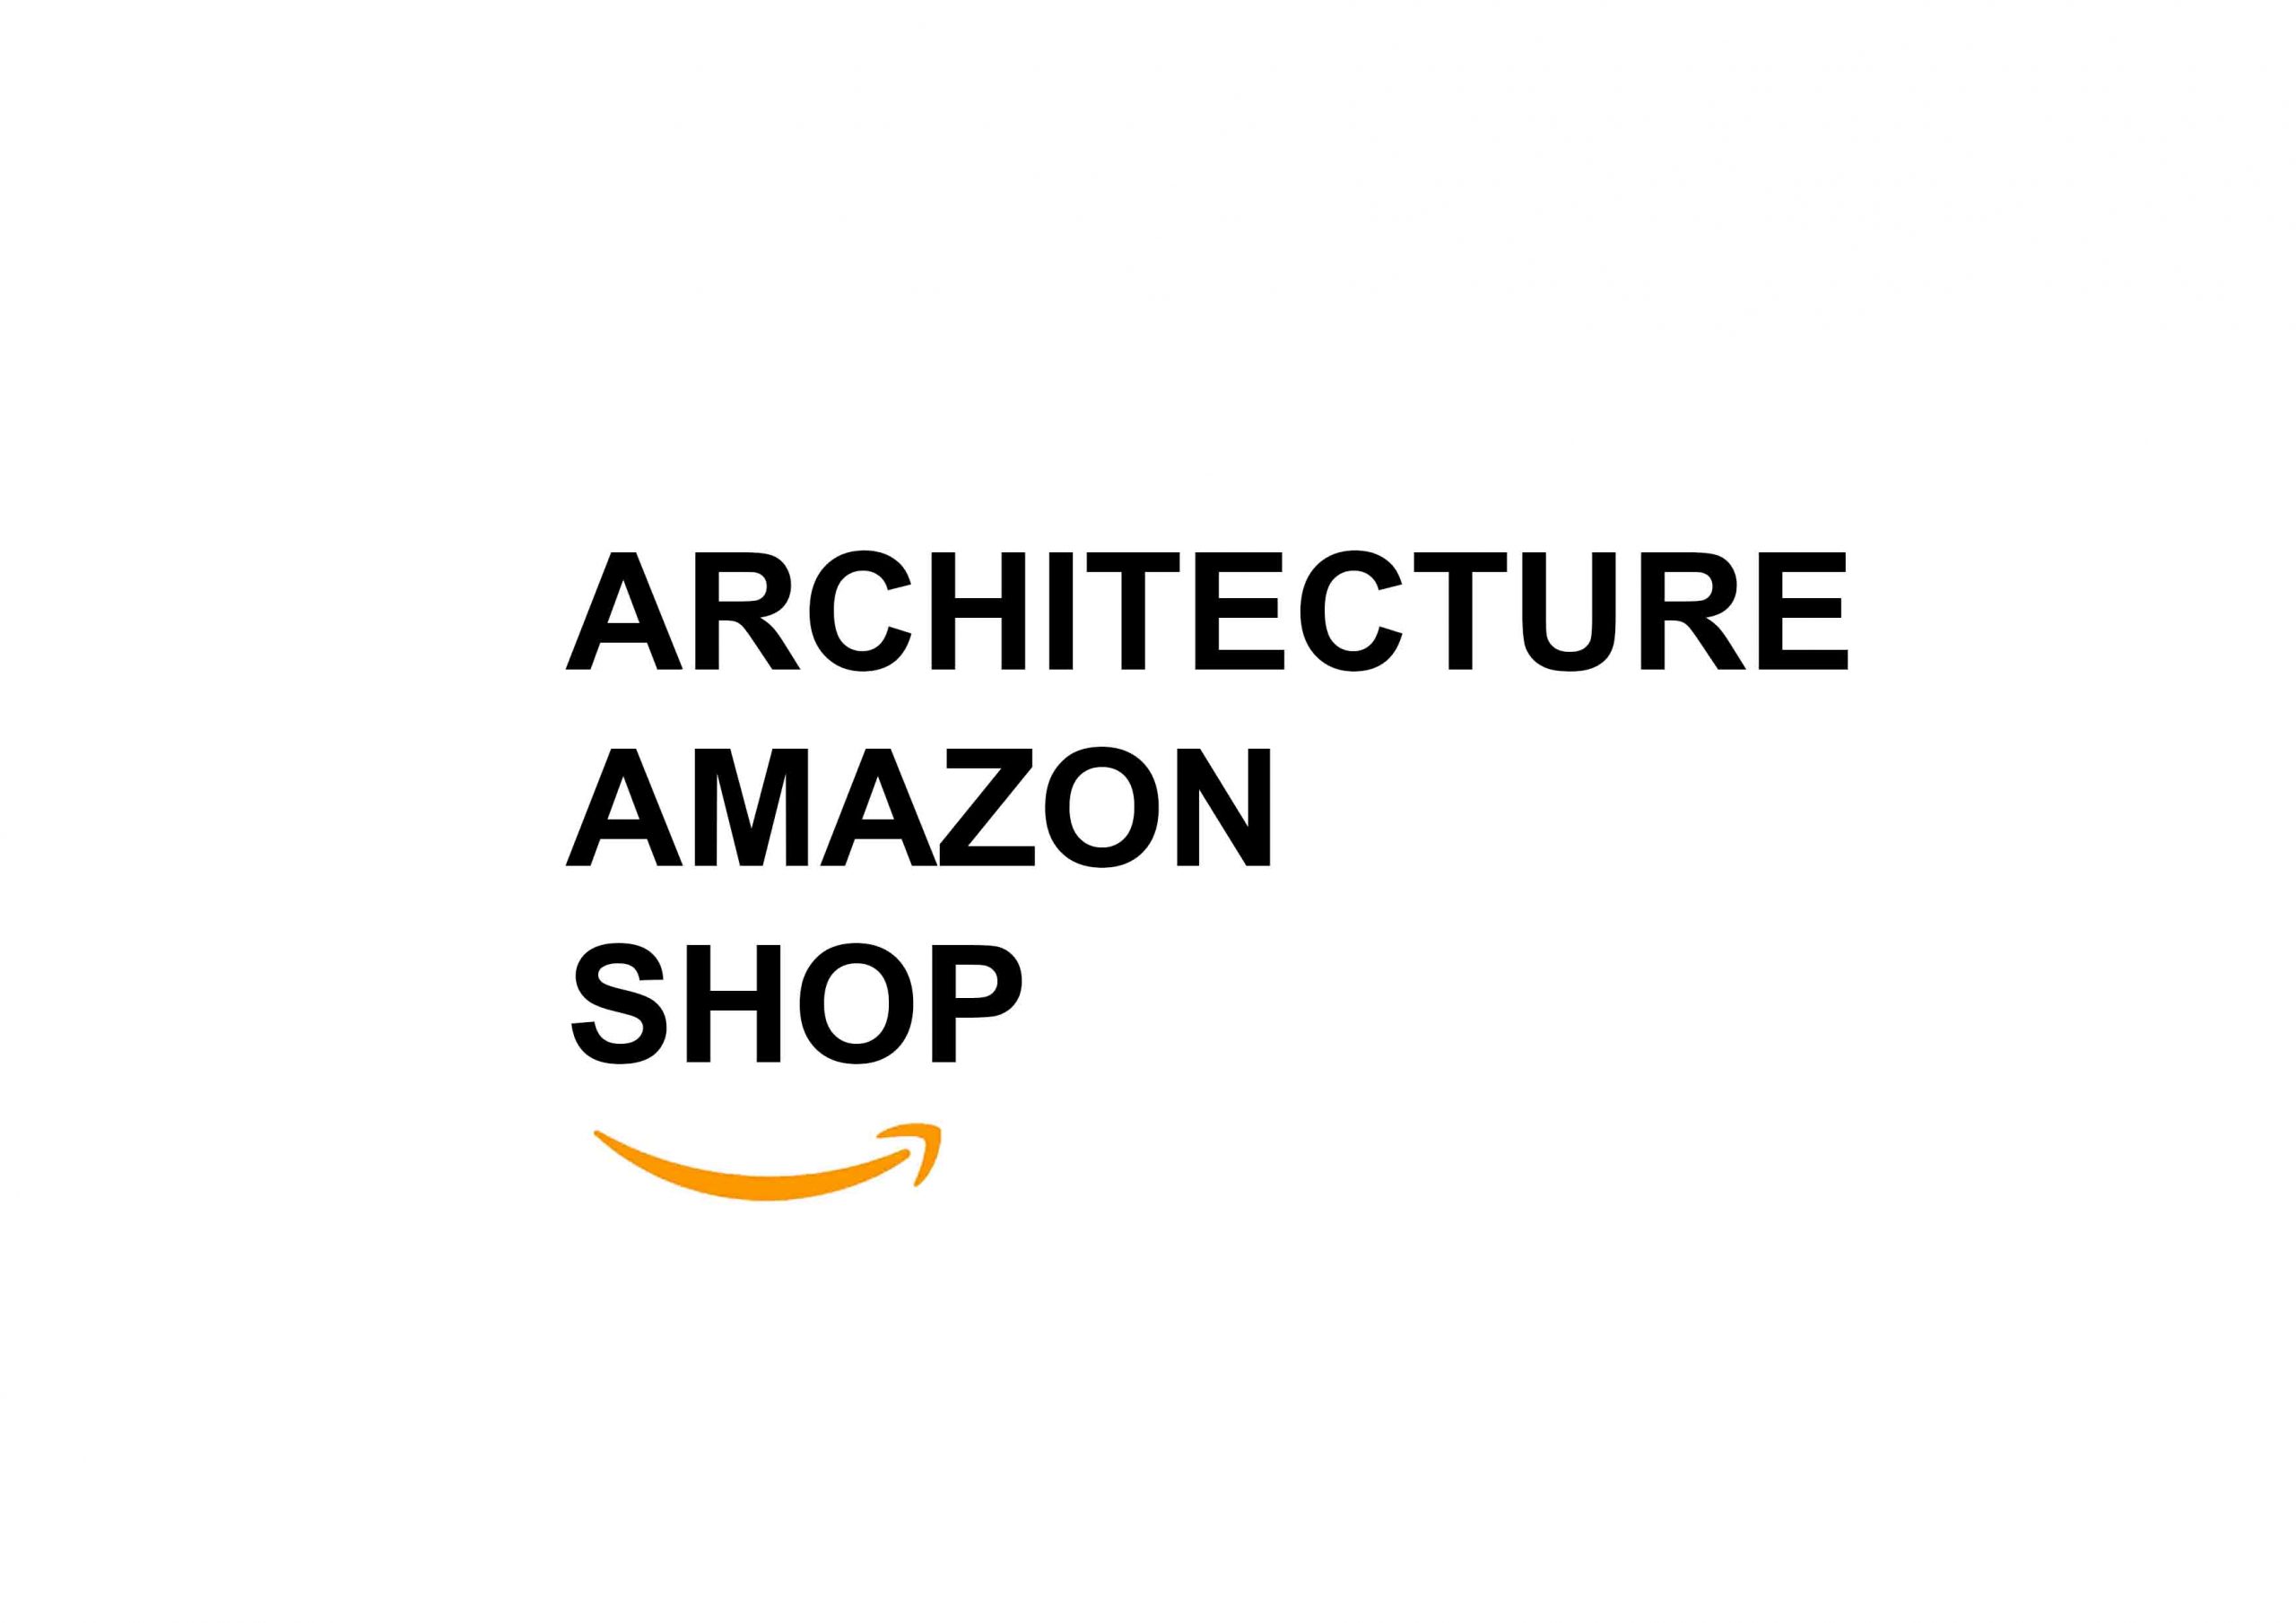 Architects Amazon Shop